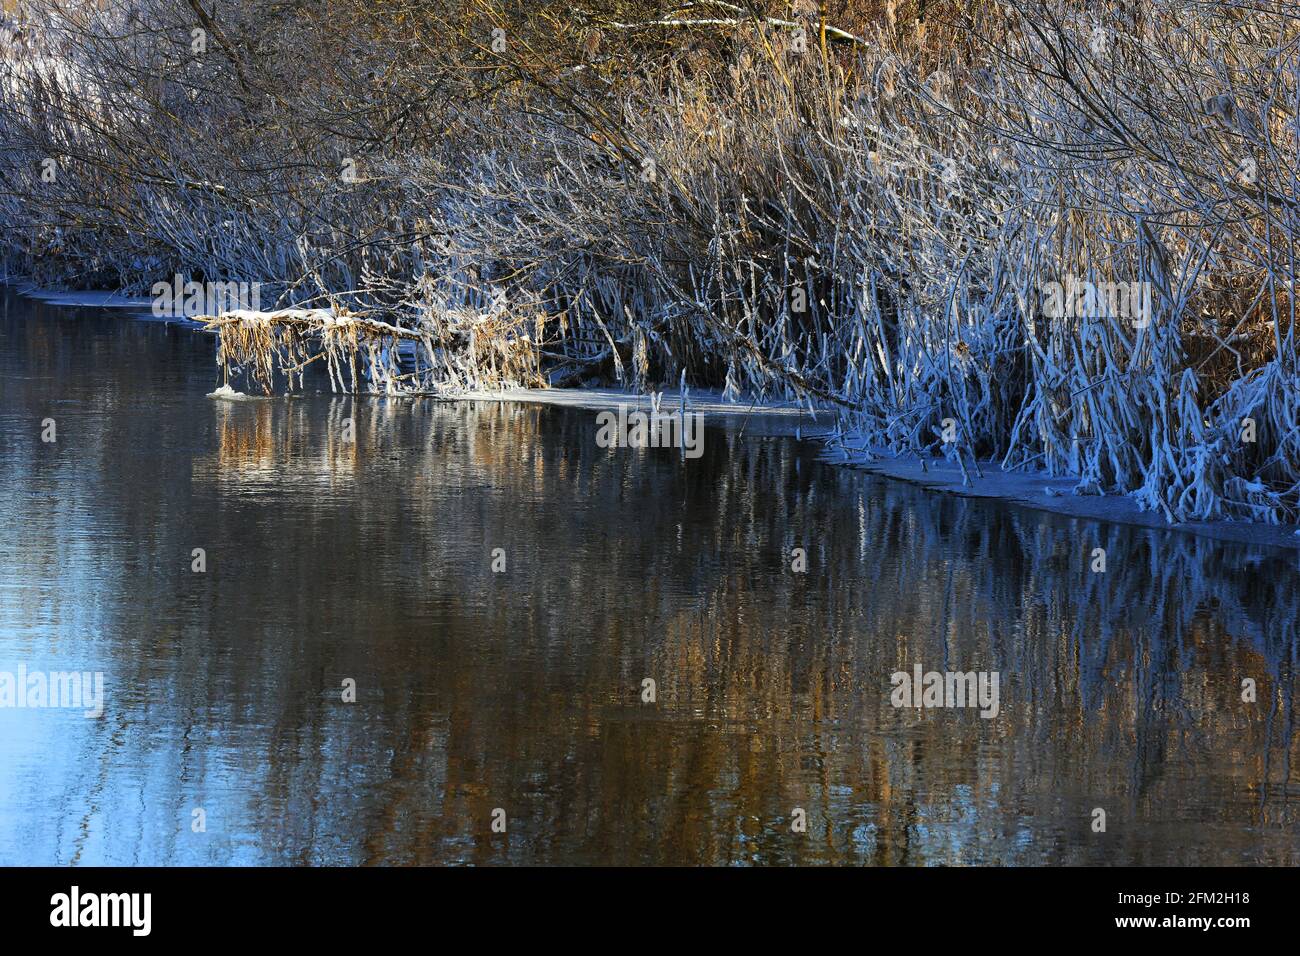 Winterlicher Fluss mit Schnee und Eis und Bäumen und Pflanzen in eisiger Kälte aufgenommen! Standort Hahnbach bei Amberg Oberpfalz Foto de stock